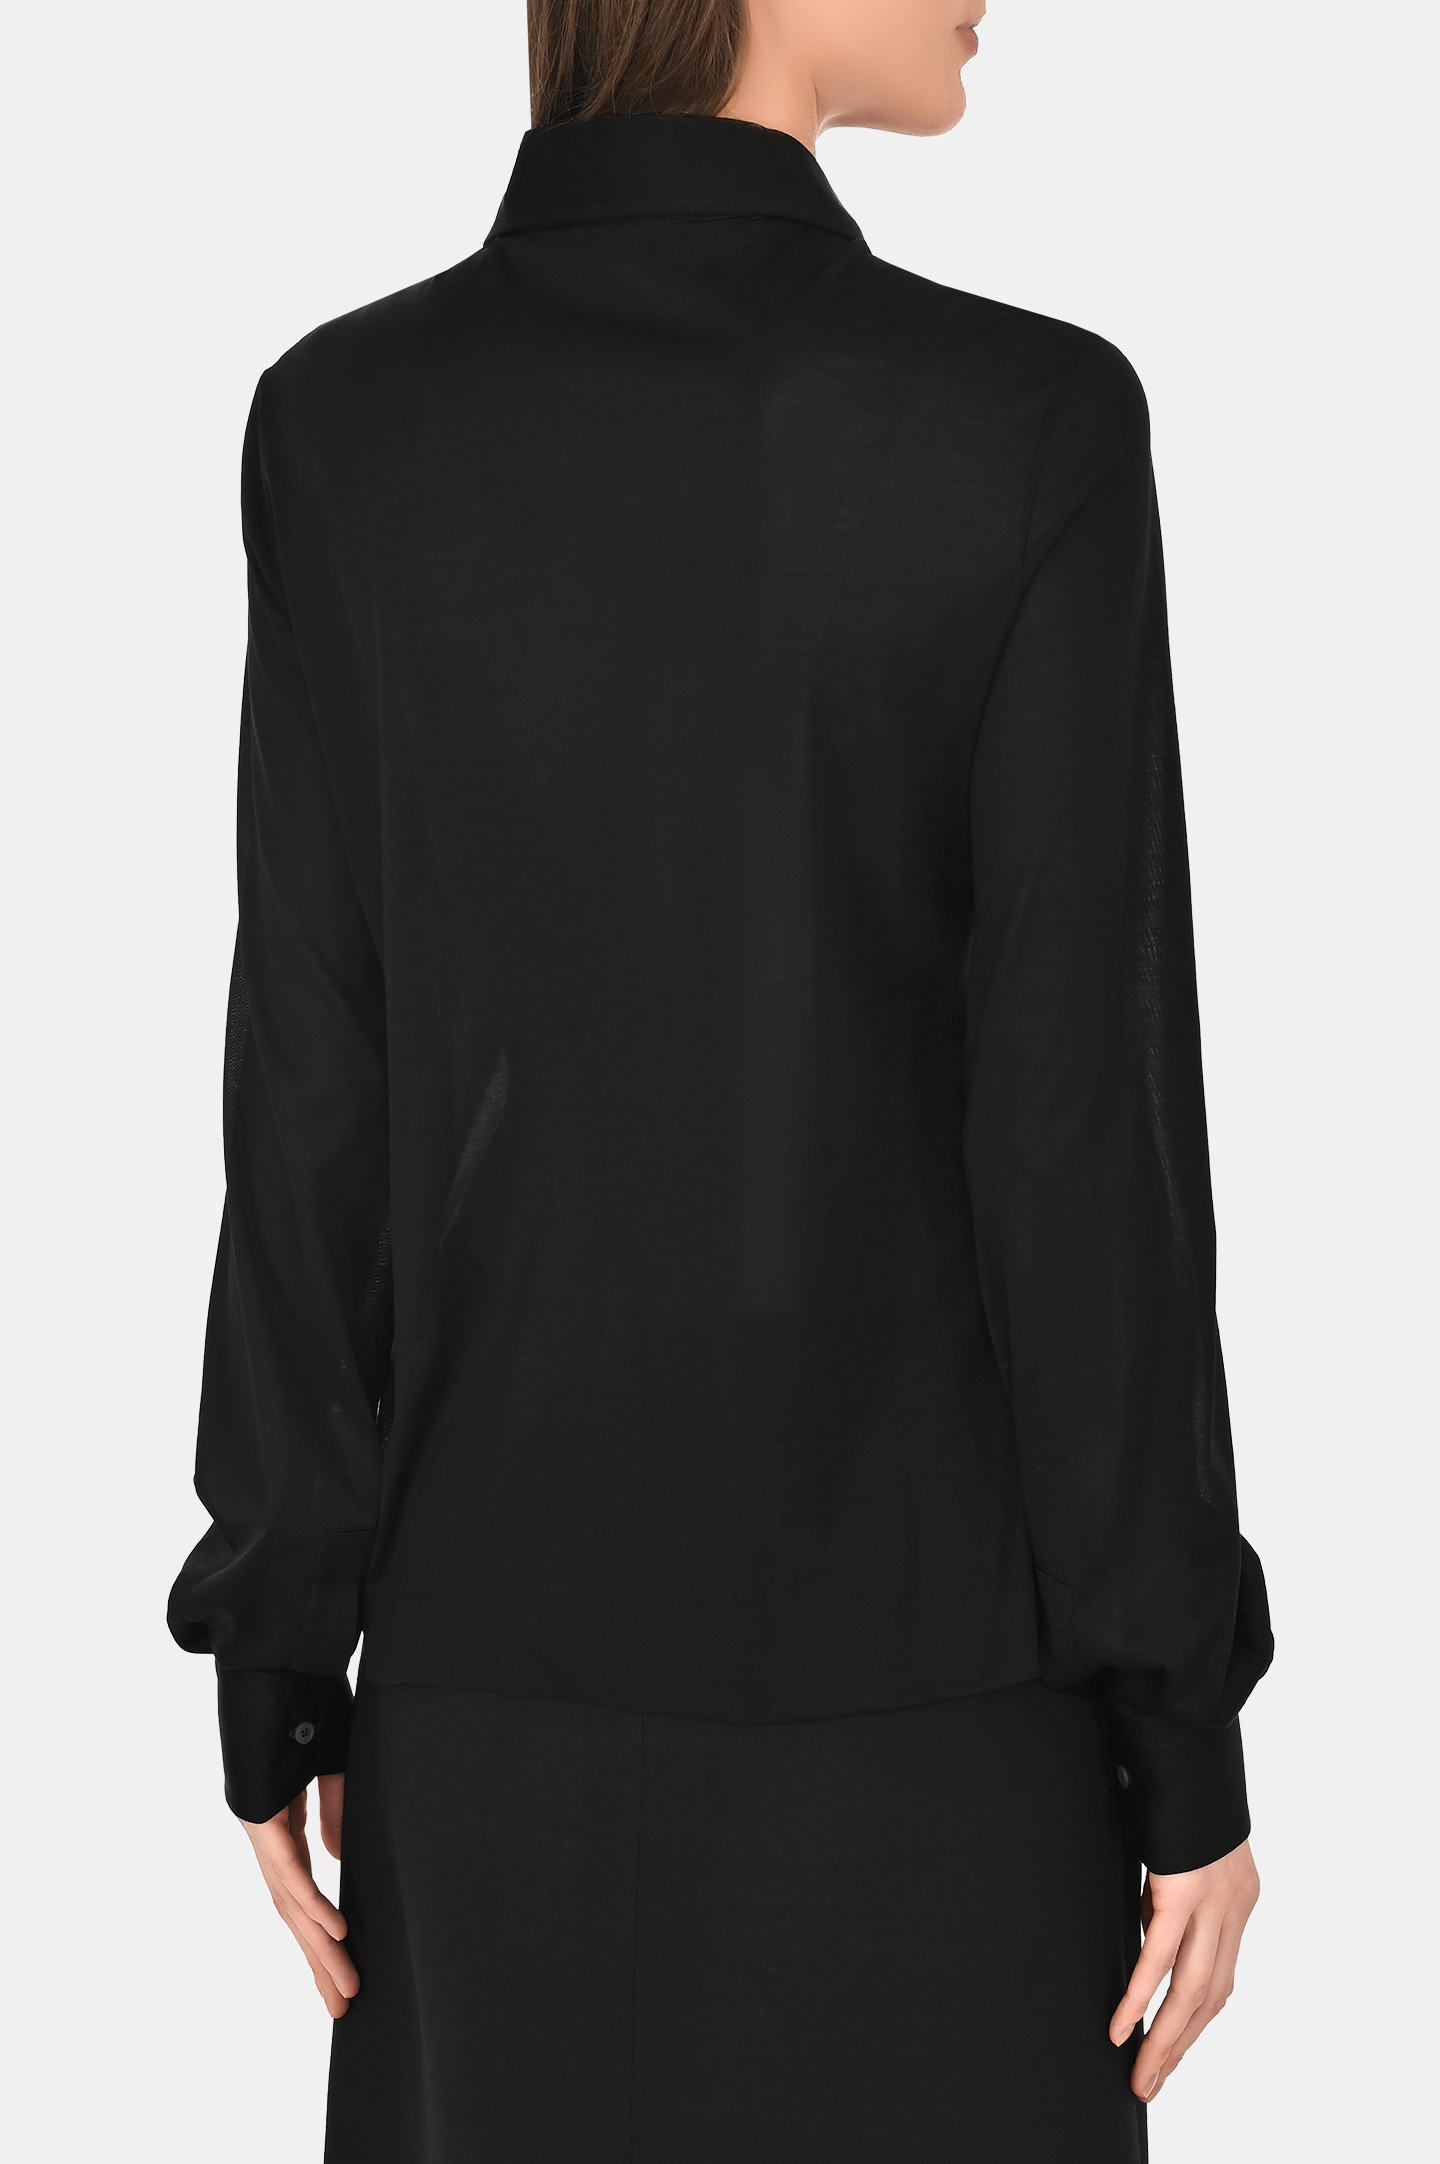 Блуза FABIANA FILIPPI CAD264F231 D639, цвет: Черный, Женский